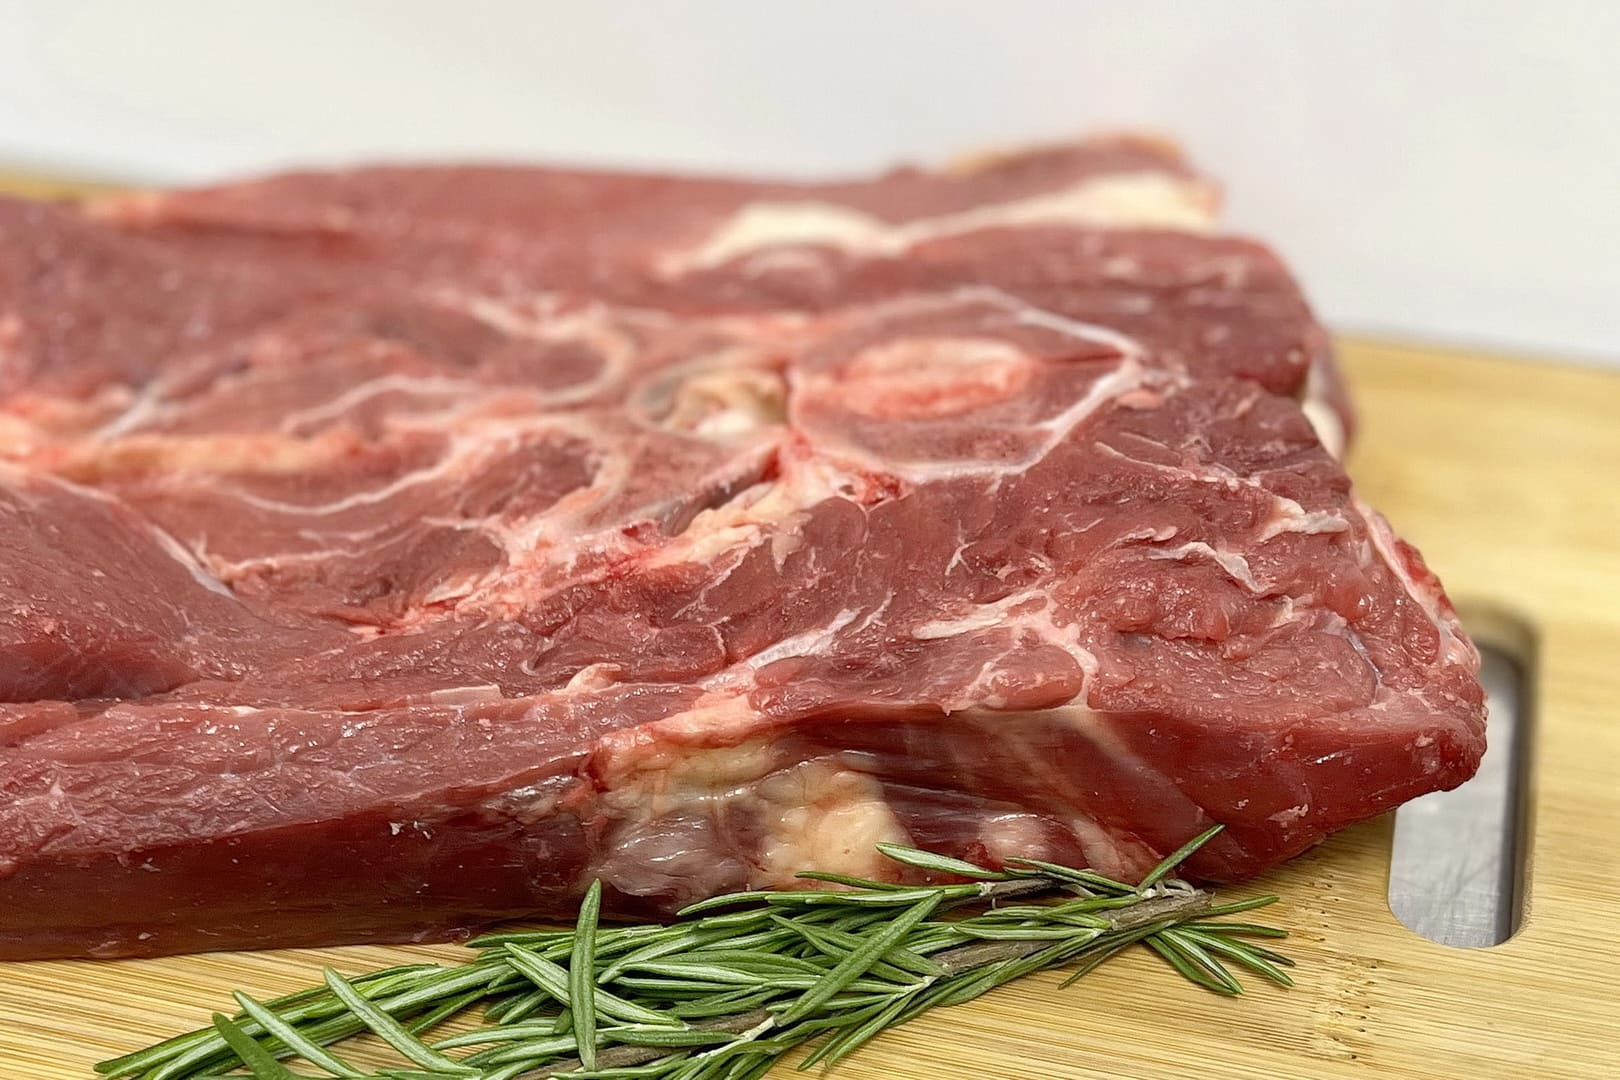 Мясной продукт из шейки говядины с костями, прослойками жира и сухожилиями, обладает богатым мясным вкусом и сочностью.  - Фото 4